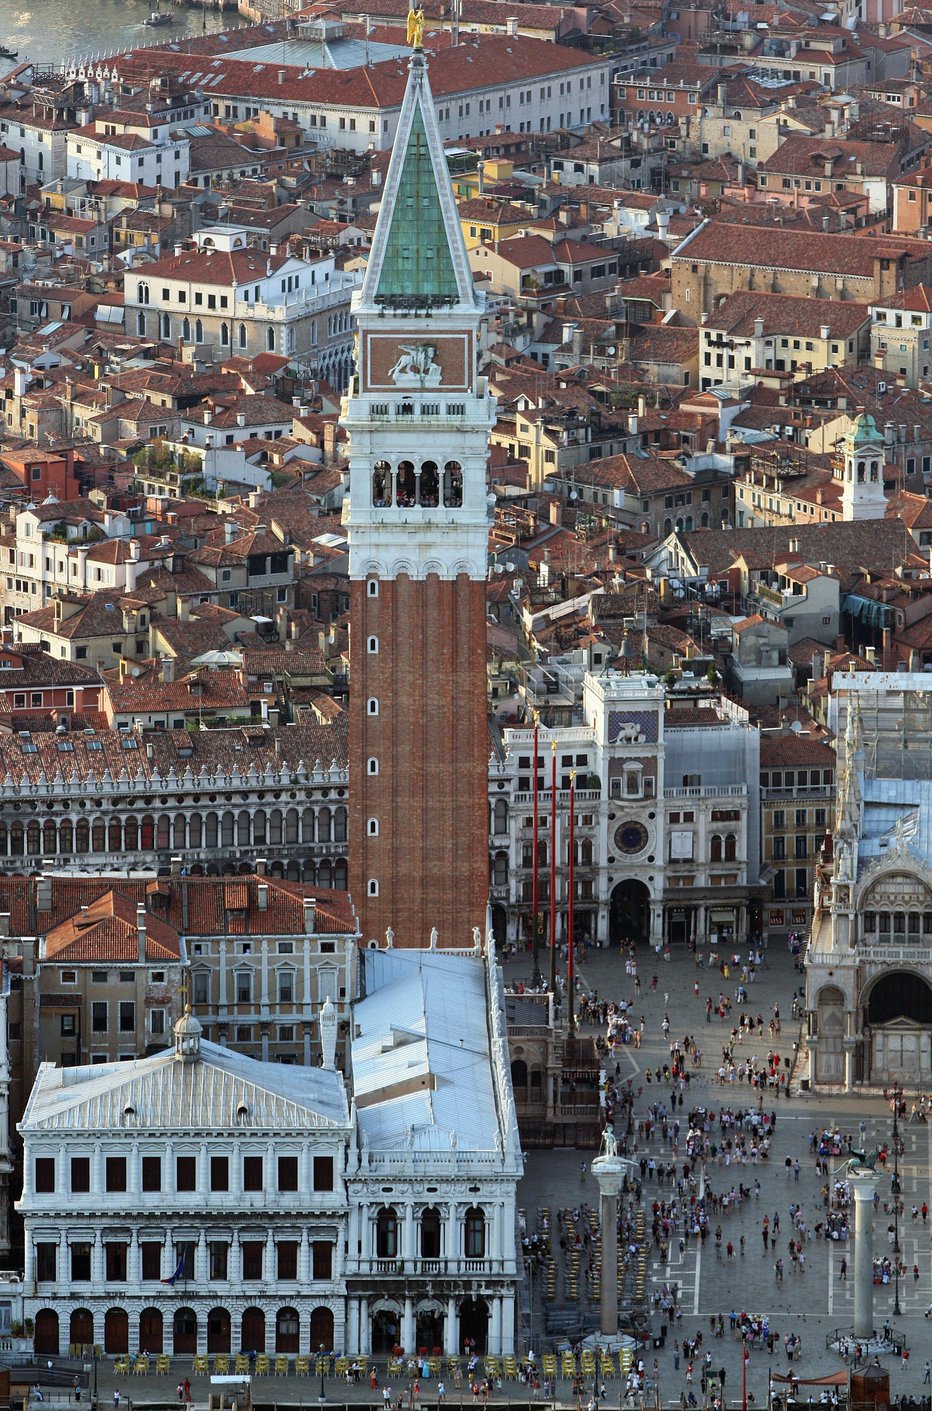 Fotografija: Sloviti zvonik je še vedno eden izmed simbolov Benetk, čeprav se je pred dobrim stoletjem sesedel v kup kamenja. Foto: Guliver/Getty Images